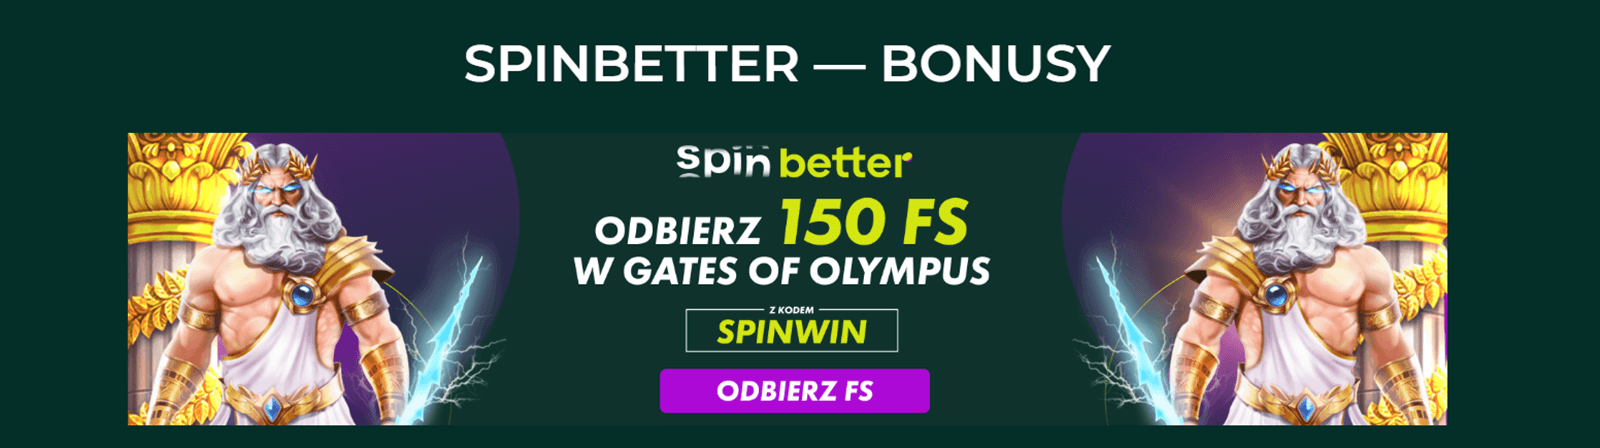 Spinbetter Bonus Bez Dep screenshot